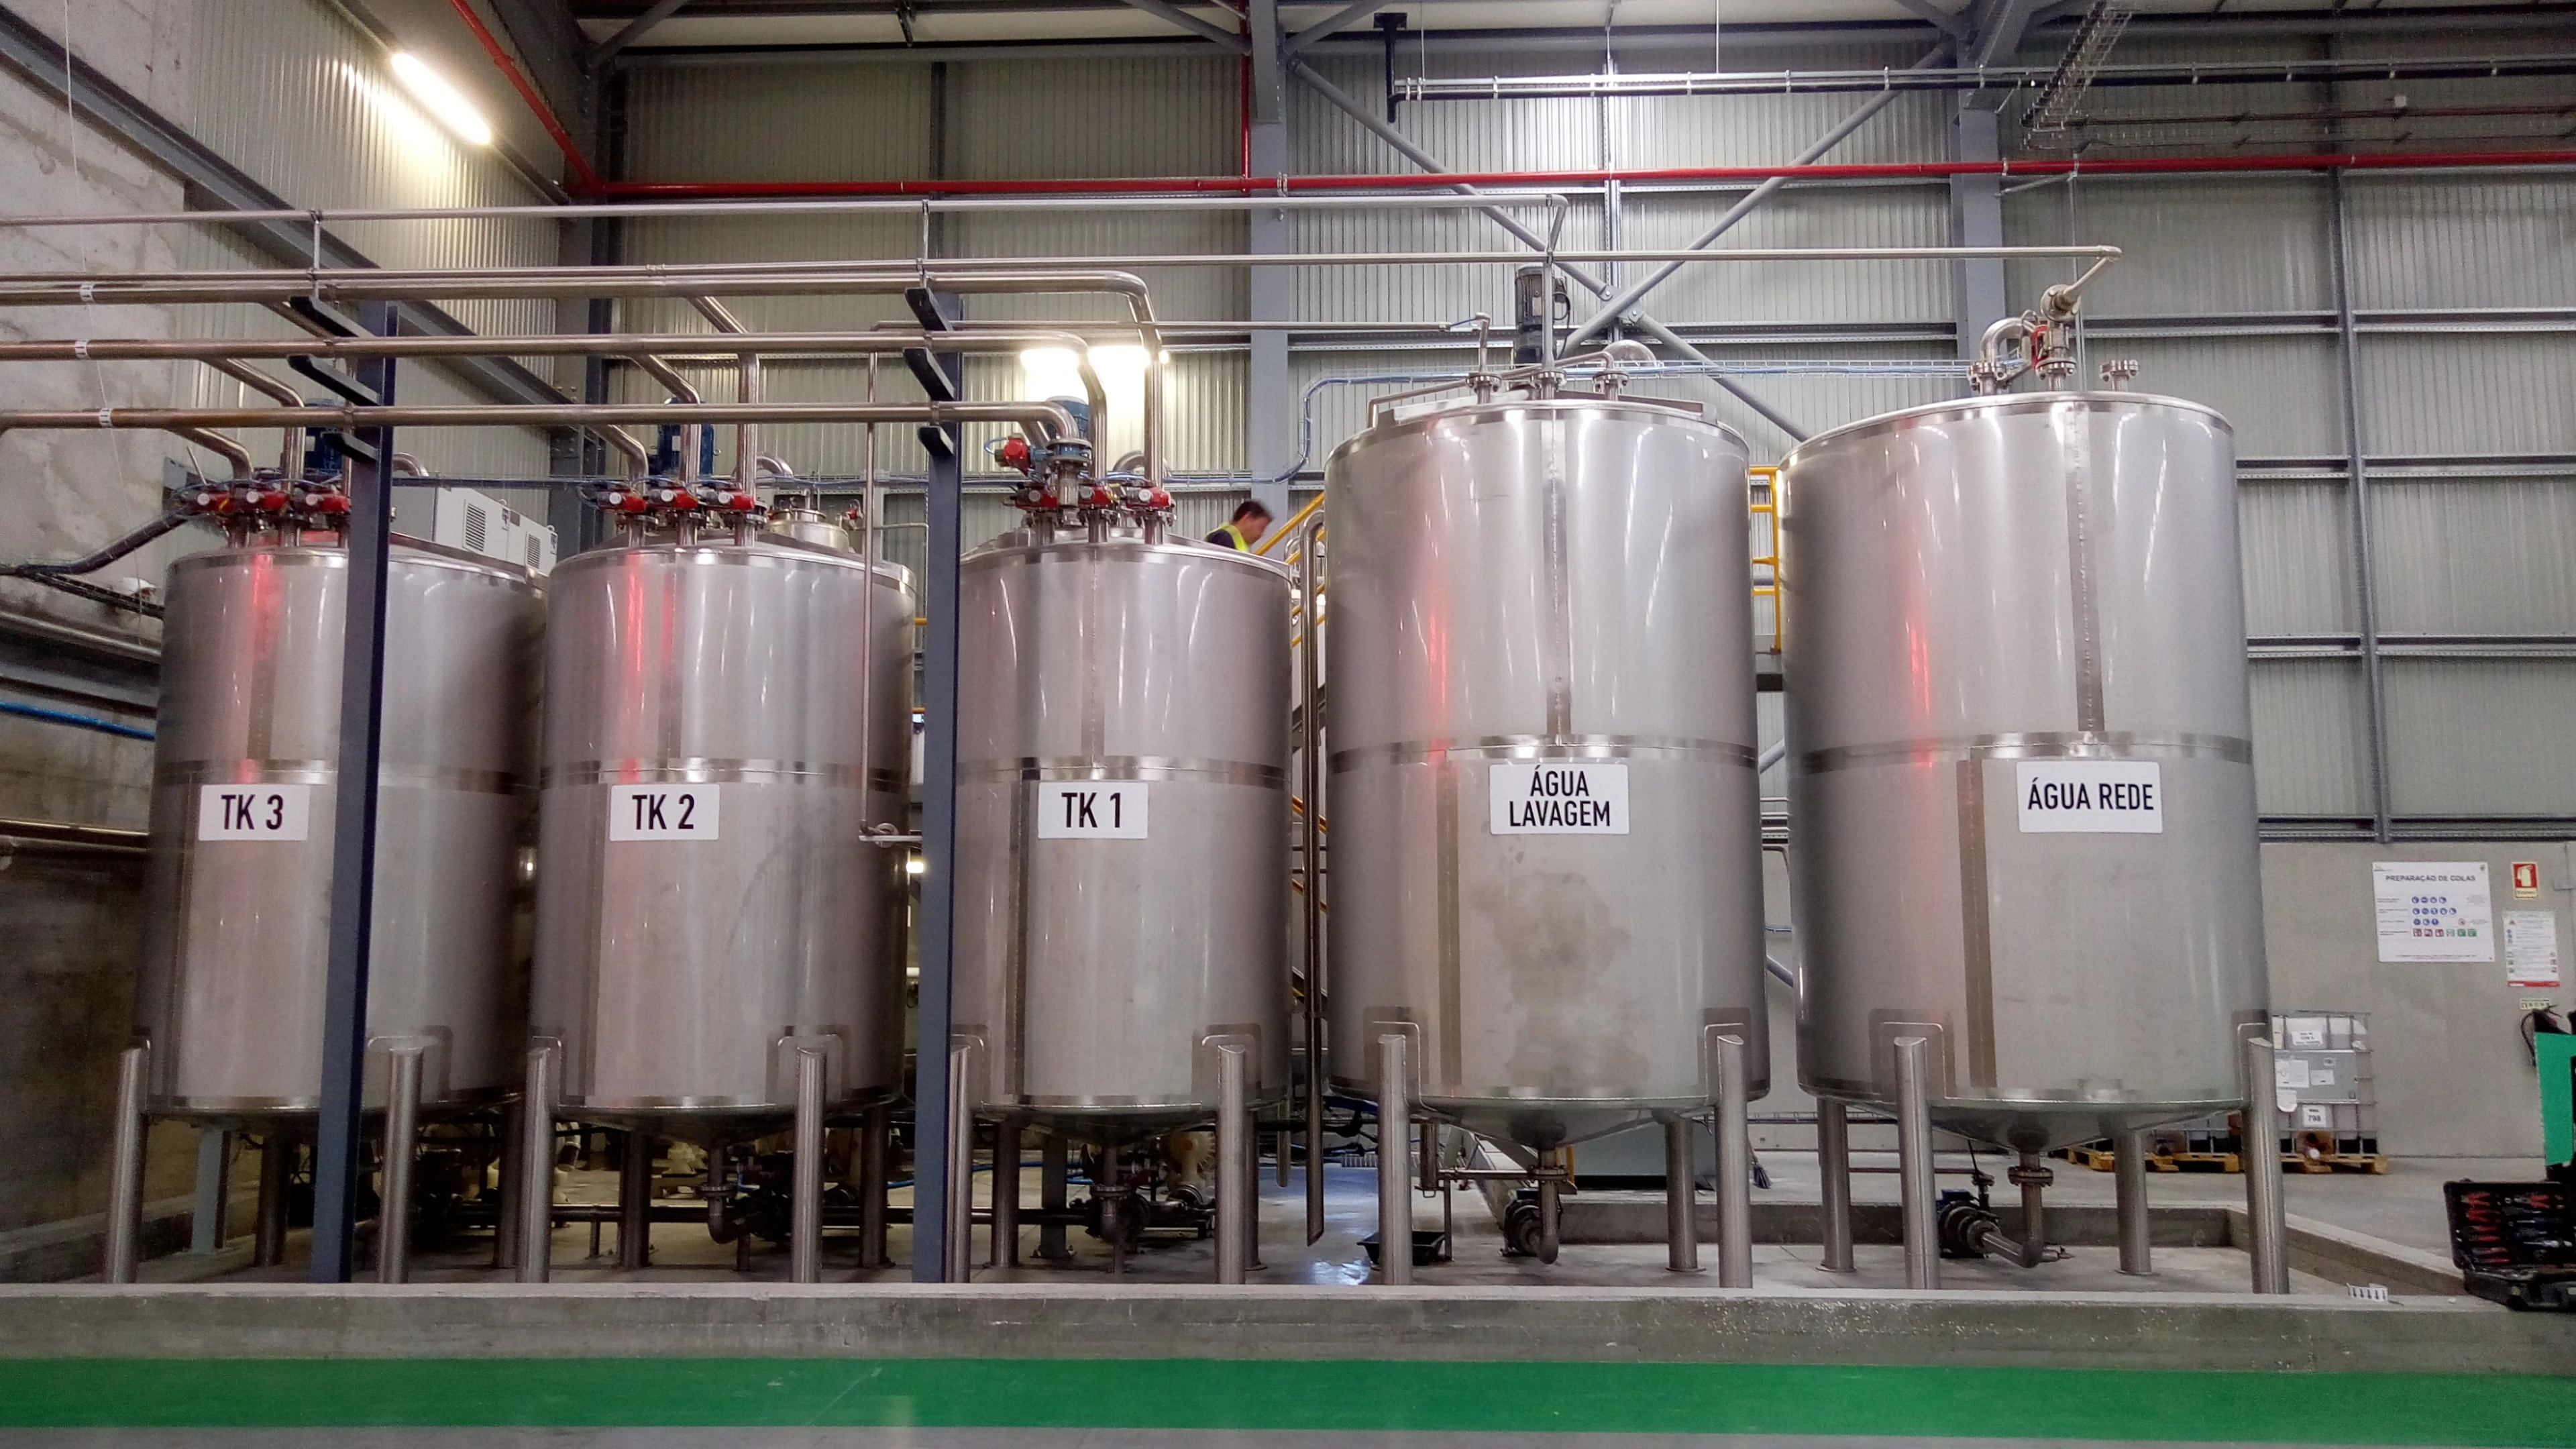 BTL Storage tanks in stainless steel - Chemical Industry